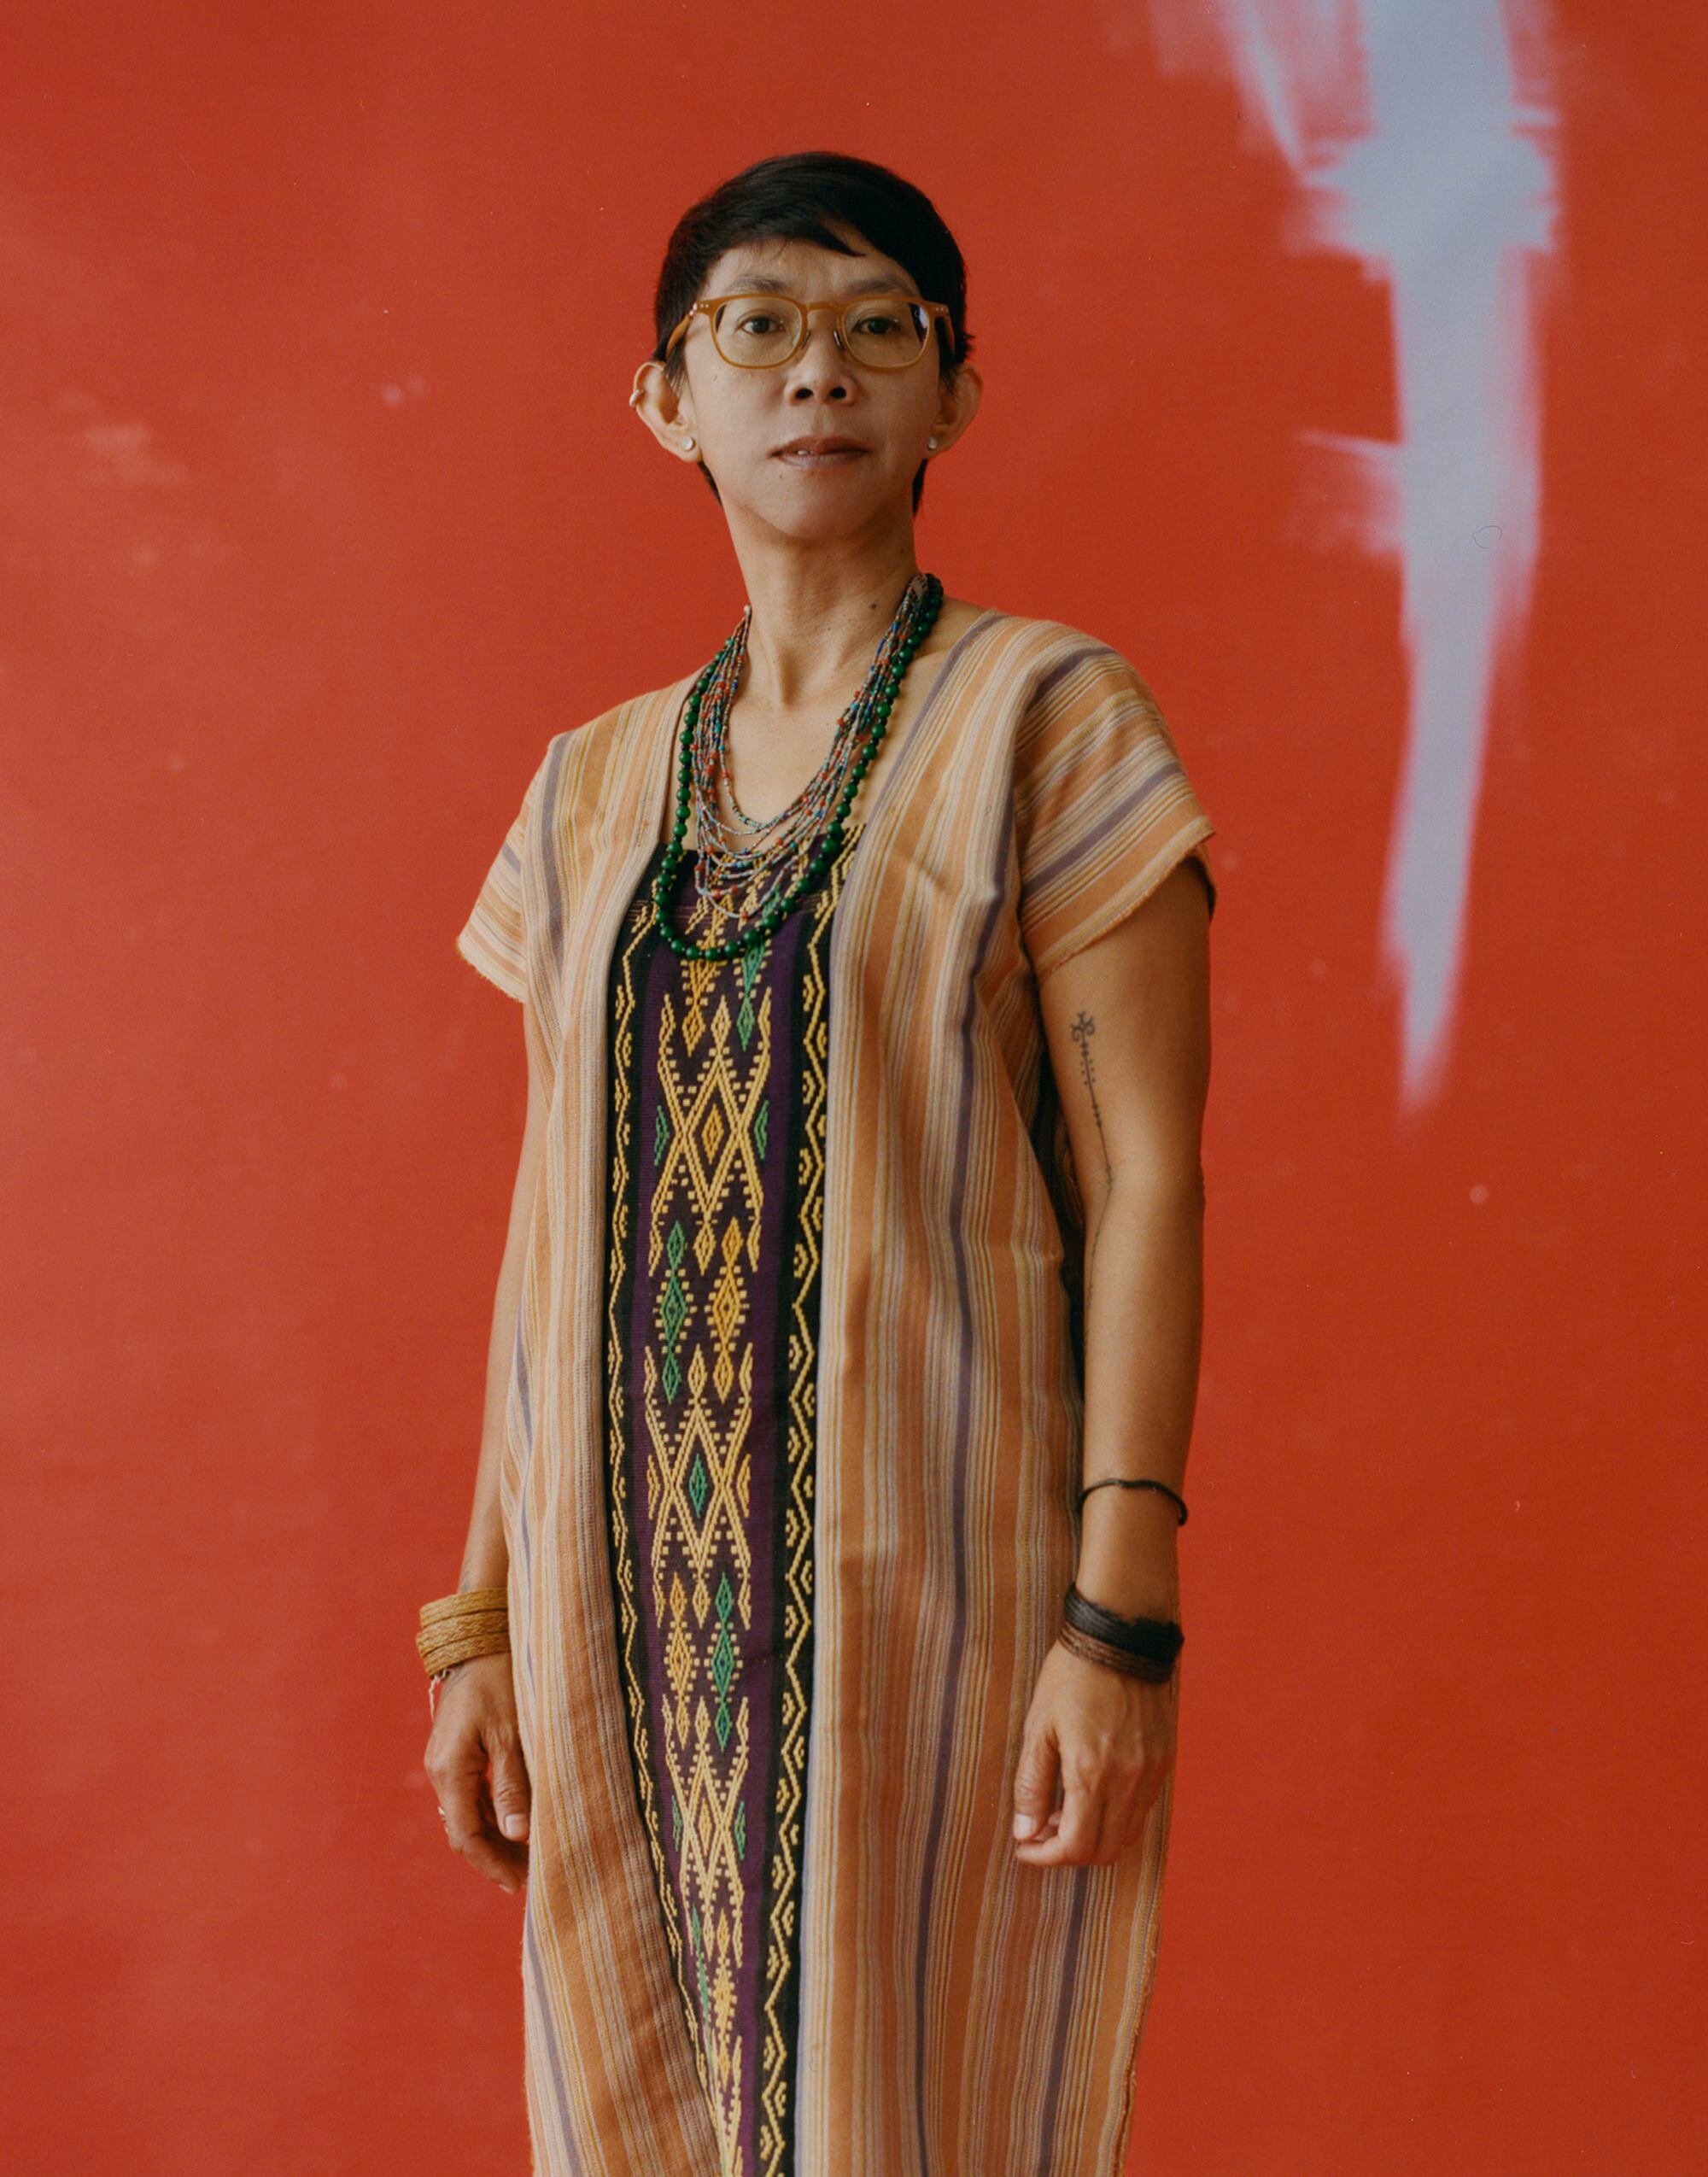 Ella es actualmente Vicesecretaria para Asuntos de Cultura Social de la Secretaria General de la Alianza de Pueblos Indígenas del Archipiélago (AMAN por sus siglas en indonesio), la mayor organización indígena del mundo. A lo largo de 18 años, ha participado activamente en cuestiones indígenas a nivel local, nacional e internacional.    